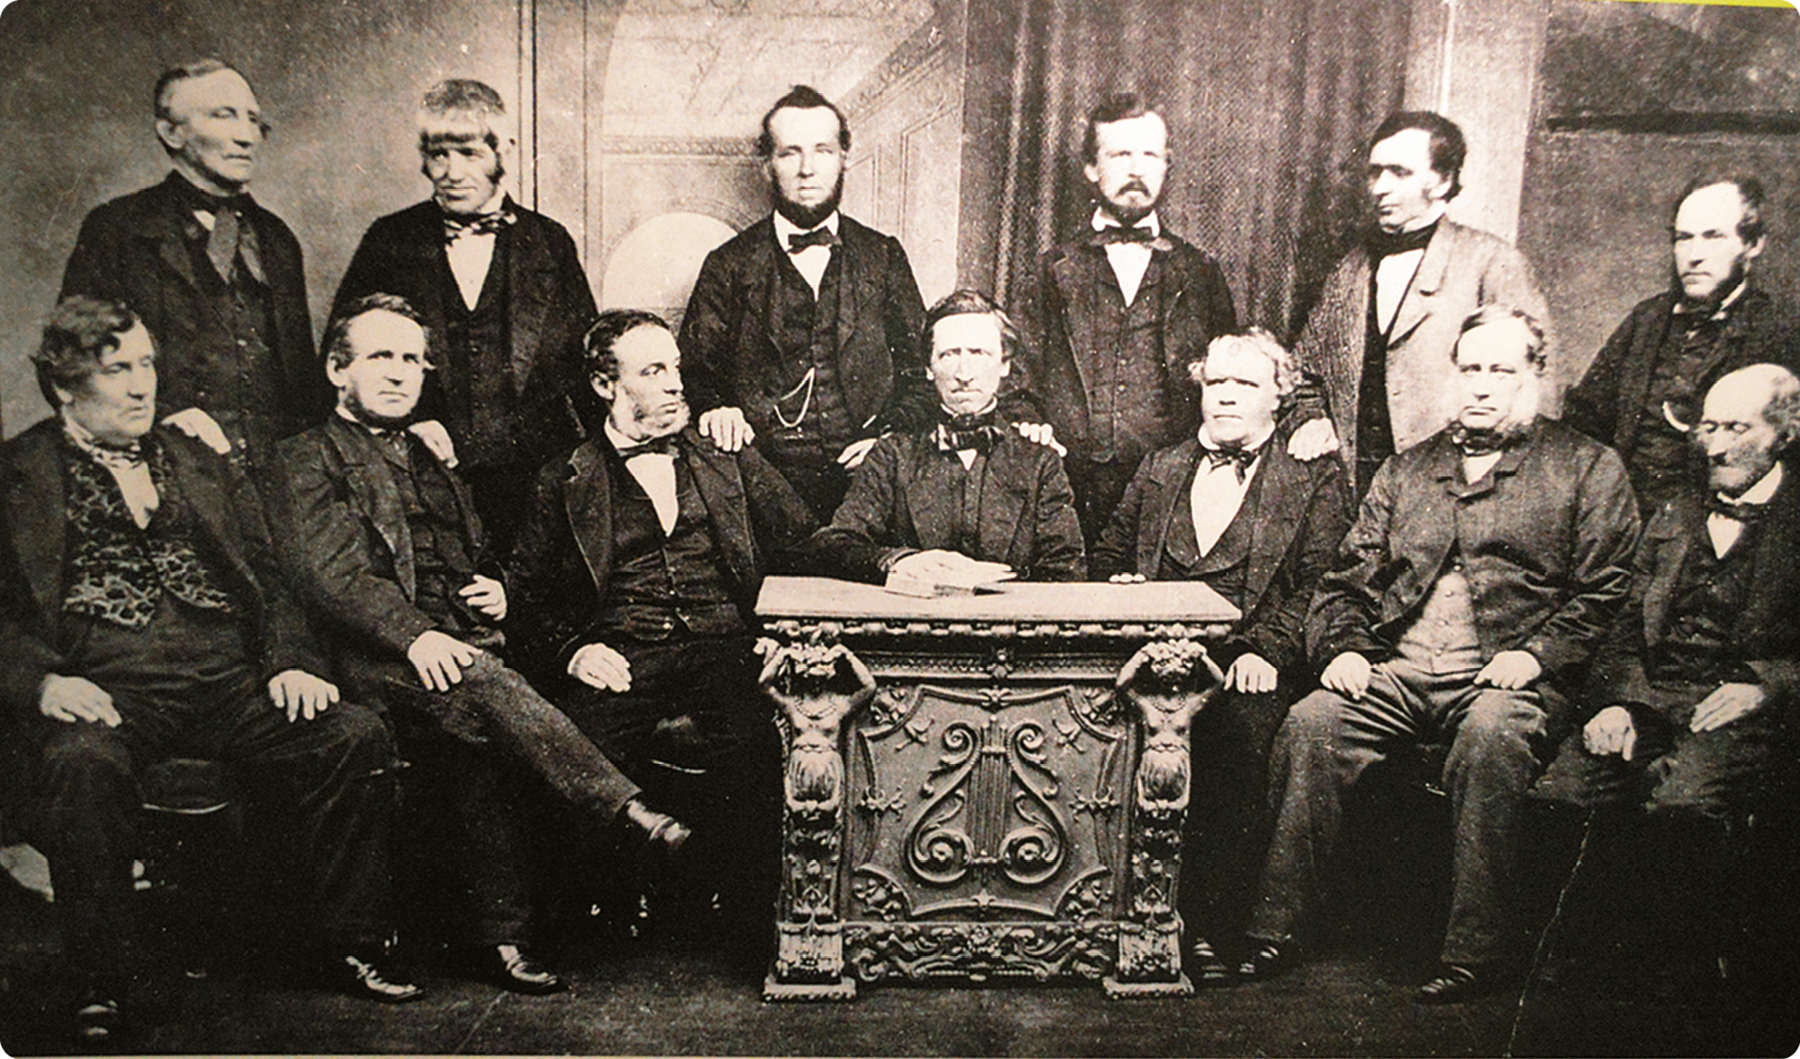 Fotografia em preto e branco. Vários homens usando terno. Alguns estão de pé e outros sentados